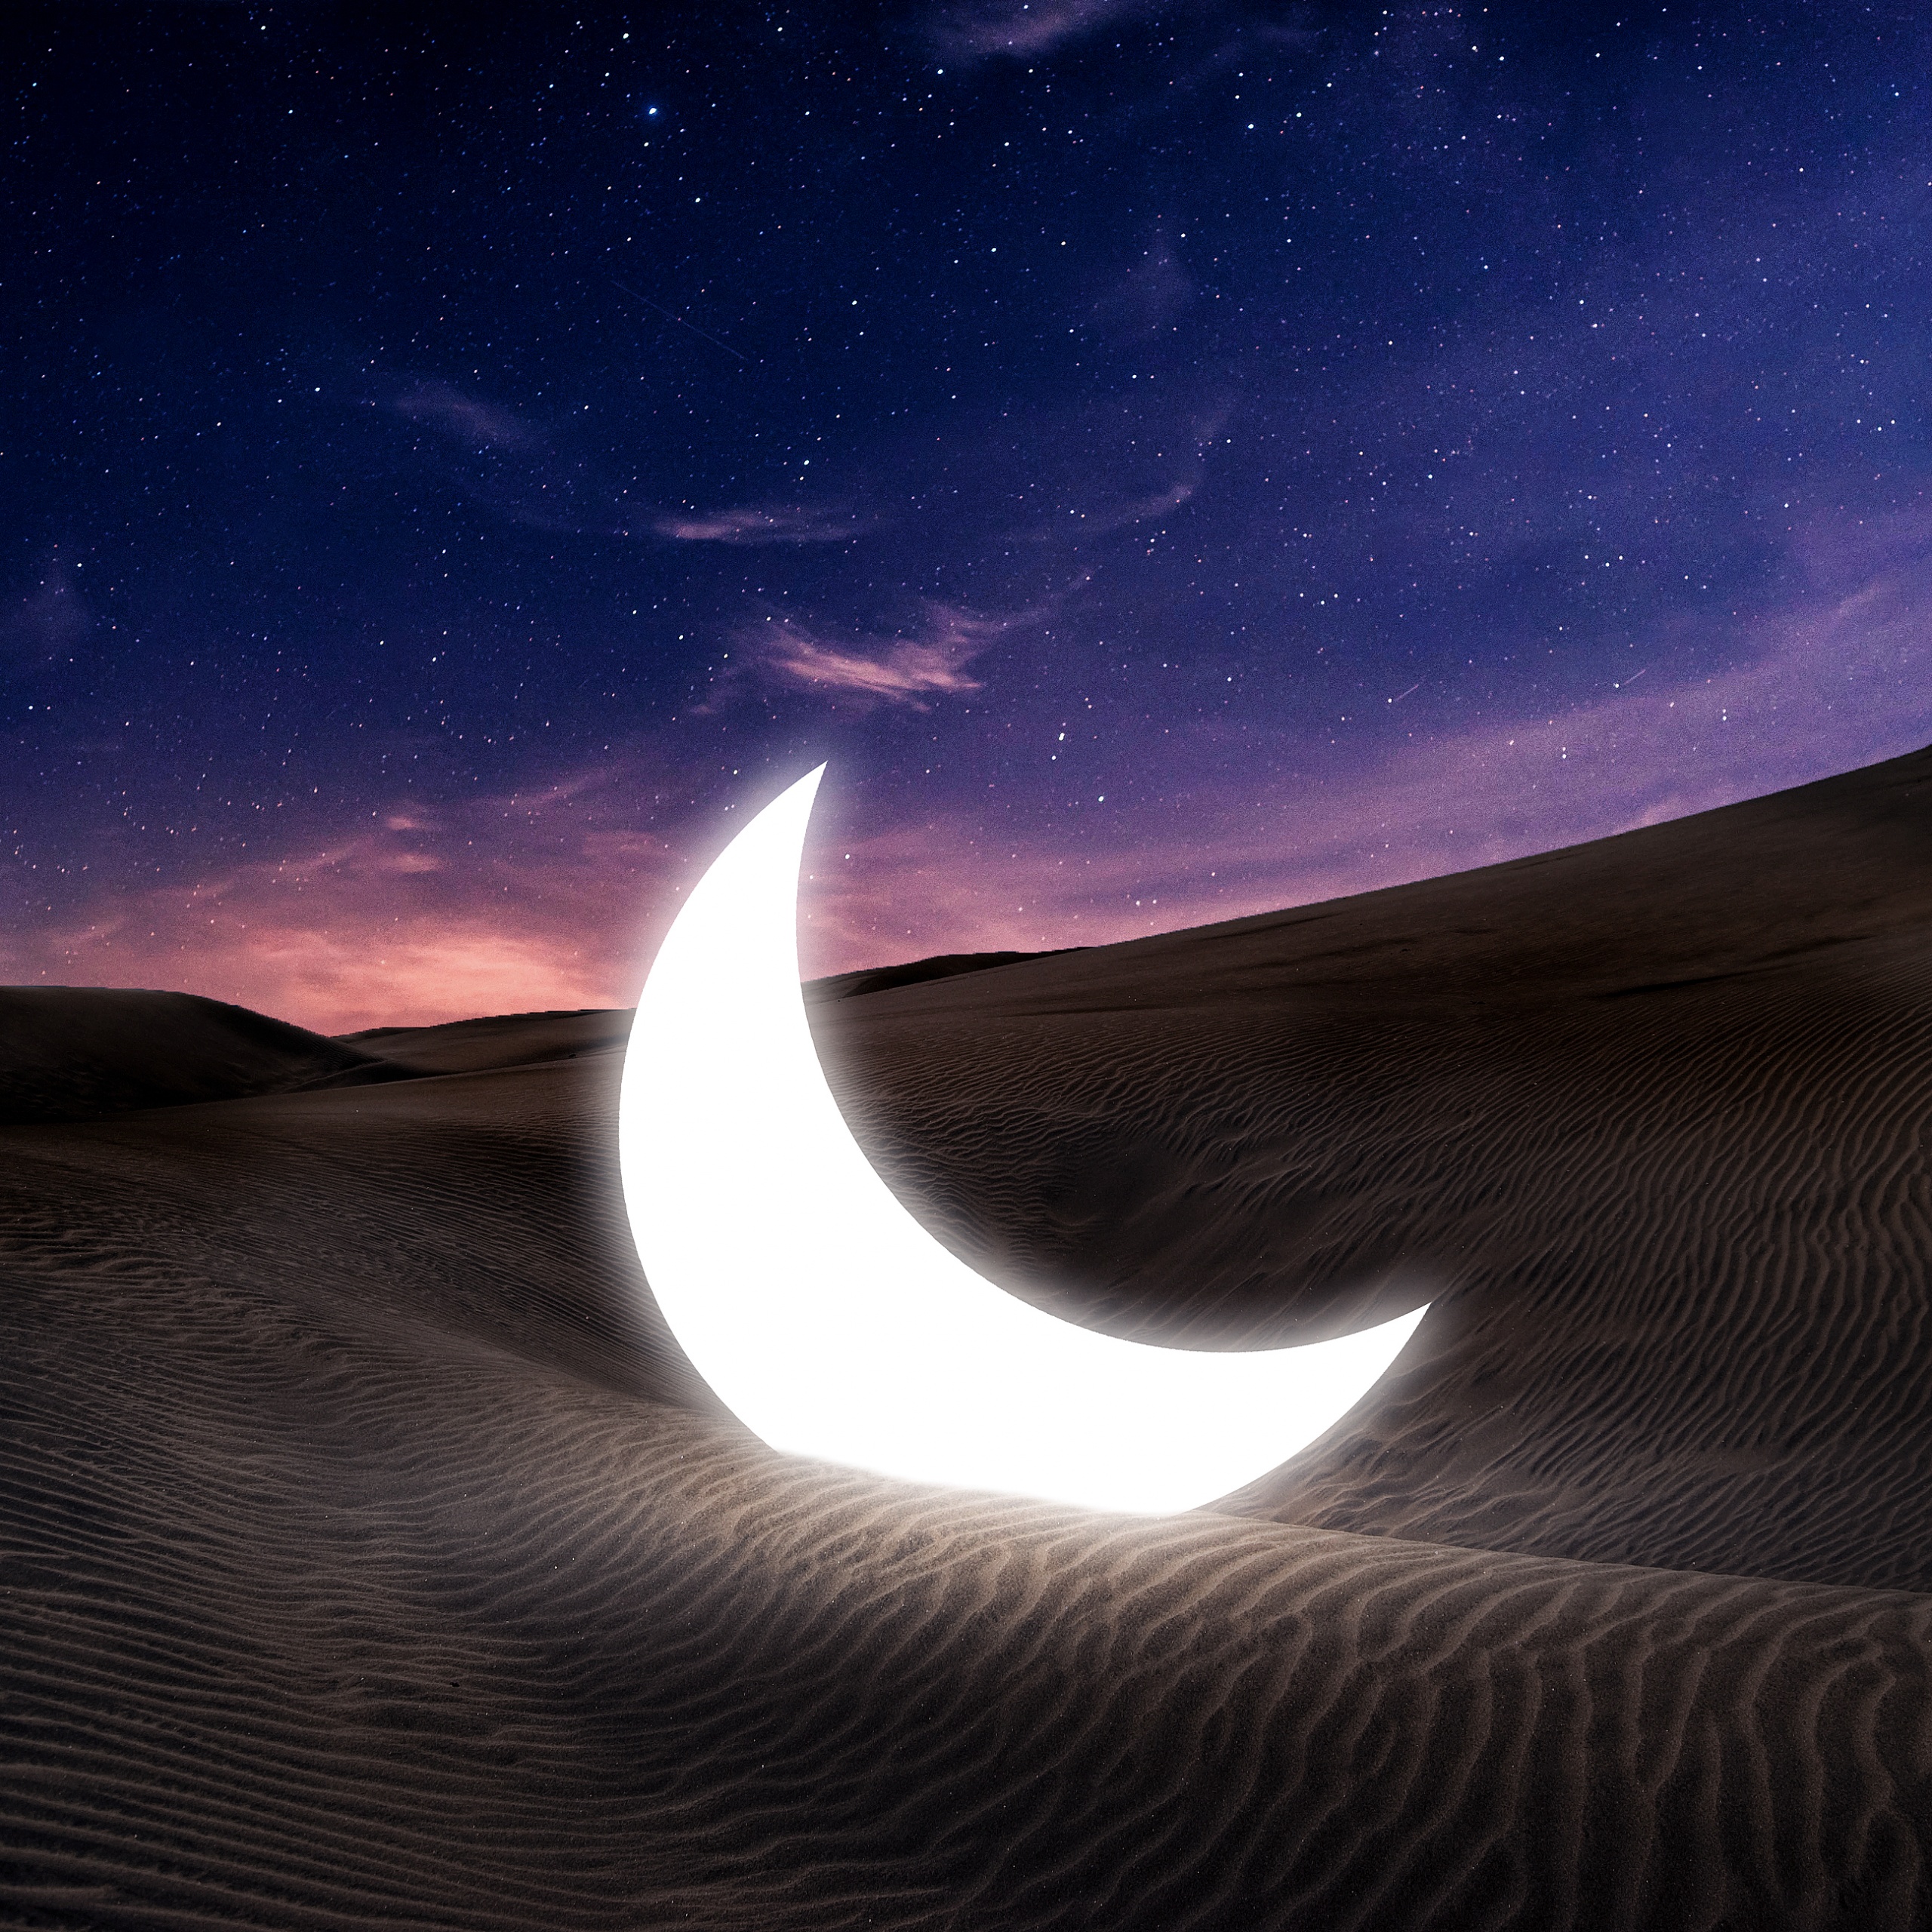 https://4kwallpapers.com/images/wallpapers/half-moon-fallen-desert-starry-sky-evening-sky-dawn-sunset-2560x2560-3095.jpg